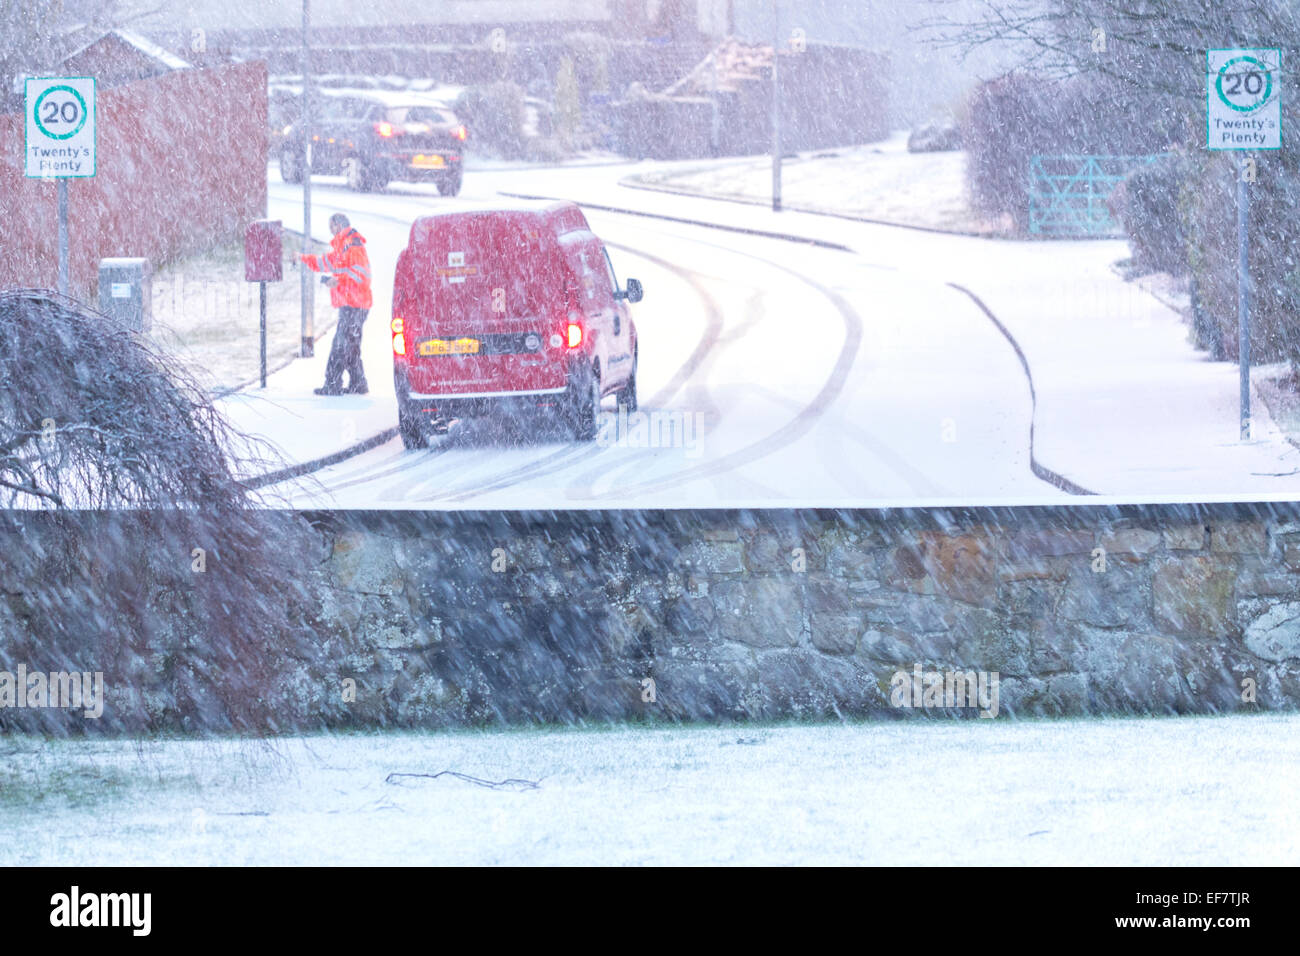 Lochwinnoch, Renfrewshire, Scozia, Regno Unito. 28 gennaio 2015. Regno Unito Meteo: Con la neve pesante prevista per cadere durante la notte inizia a coprire il terreno come un postino raccoglie le lettere da una casella di posta Foto Stock